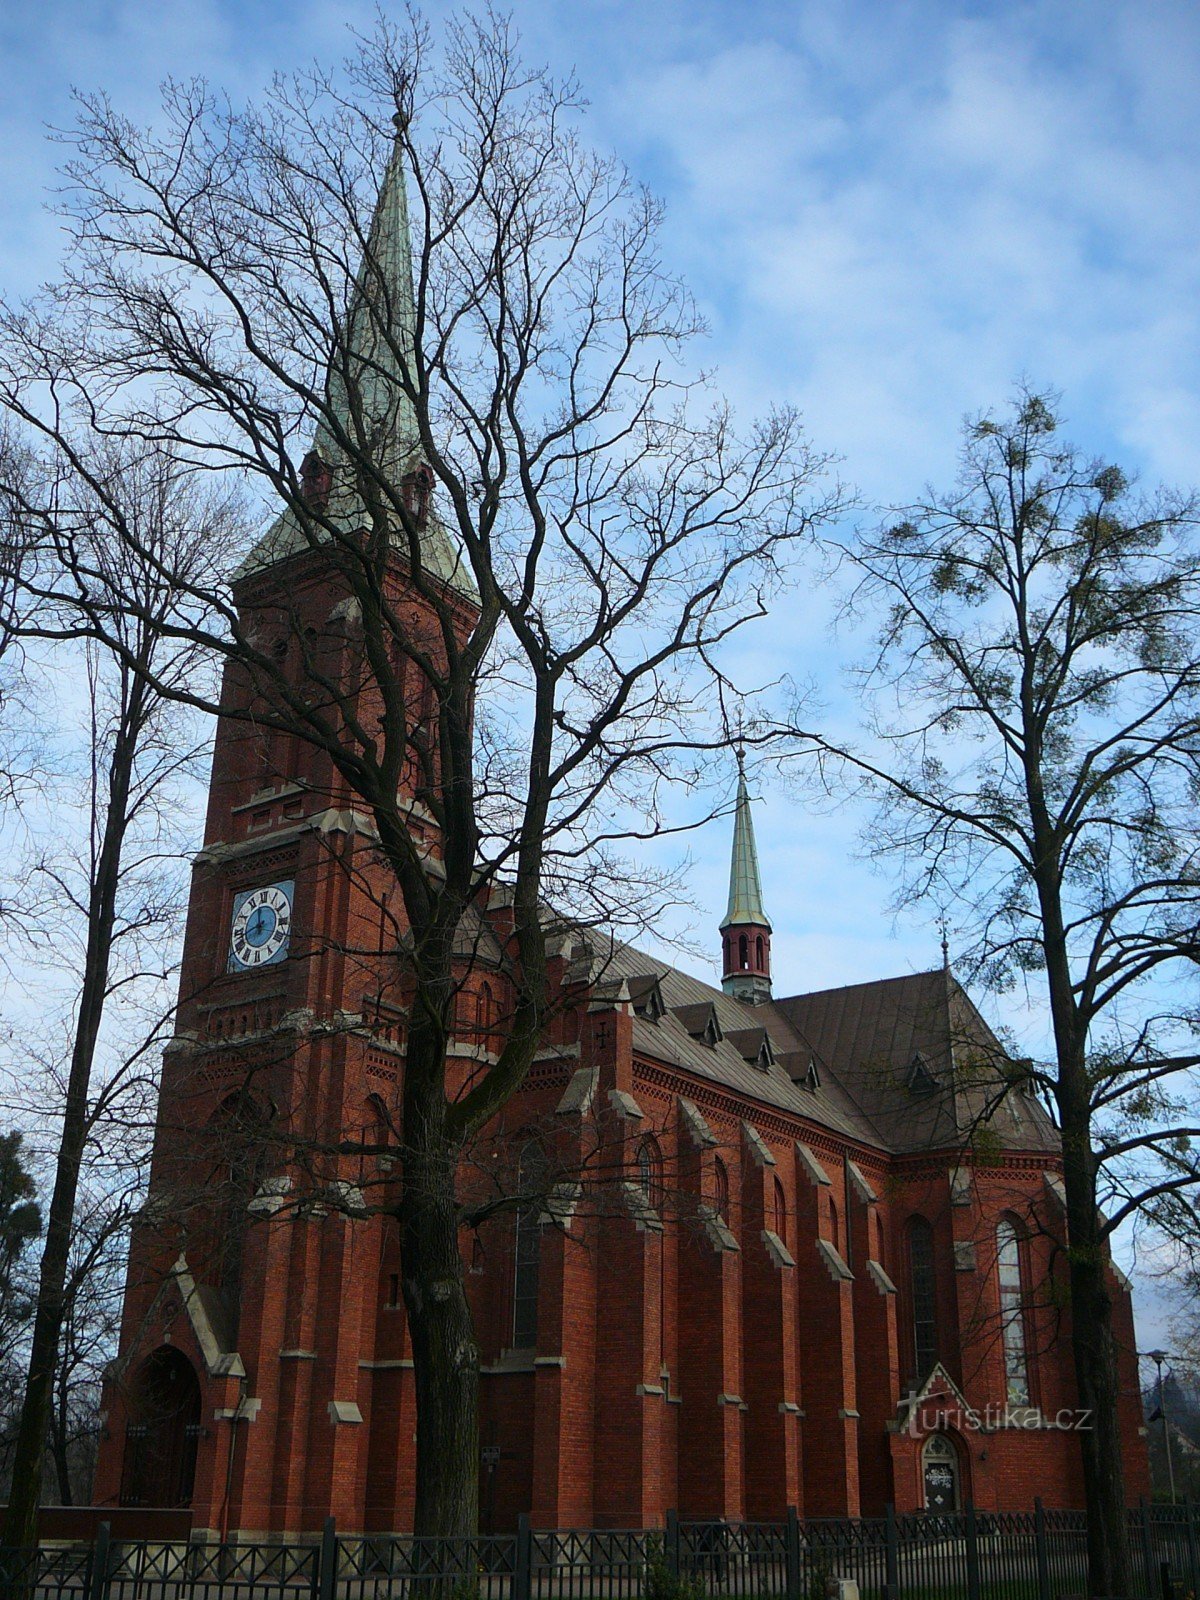 St. Alberts kyrka i Třinec